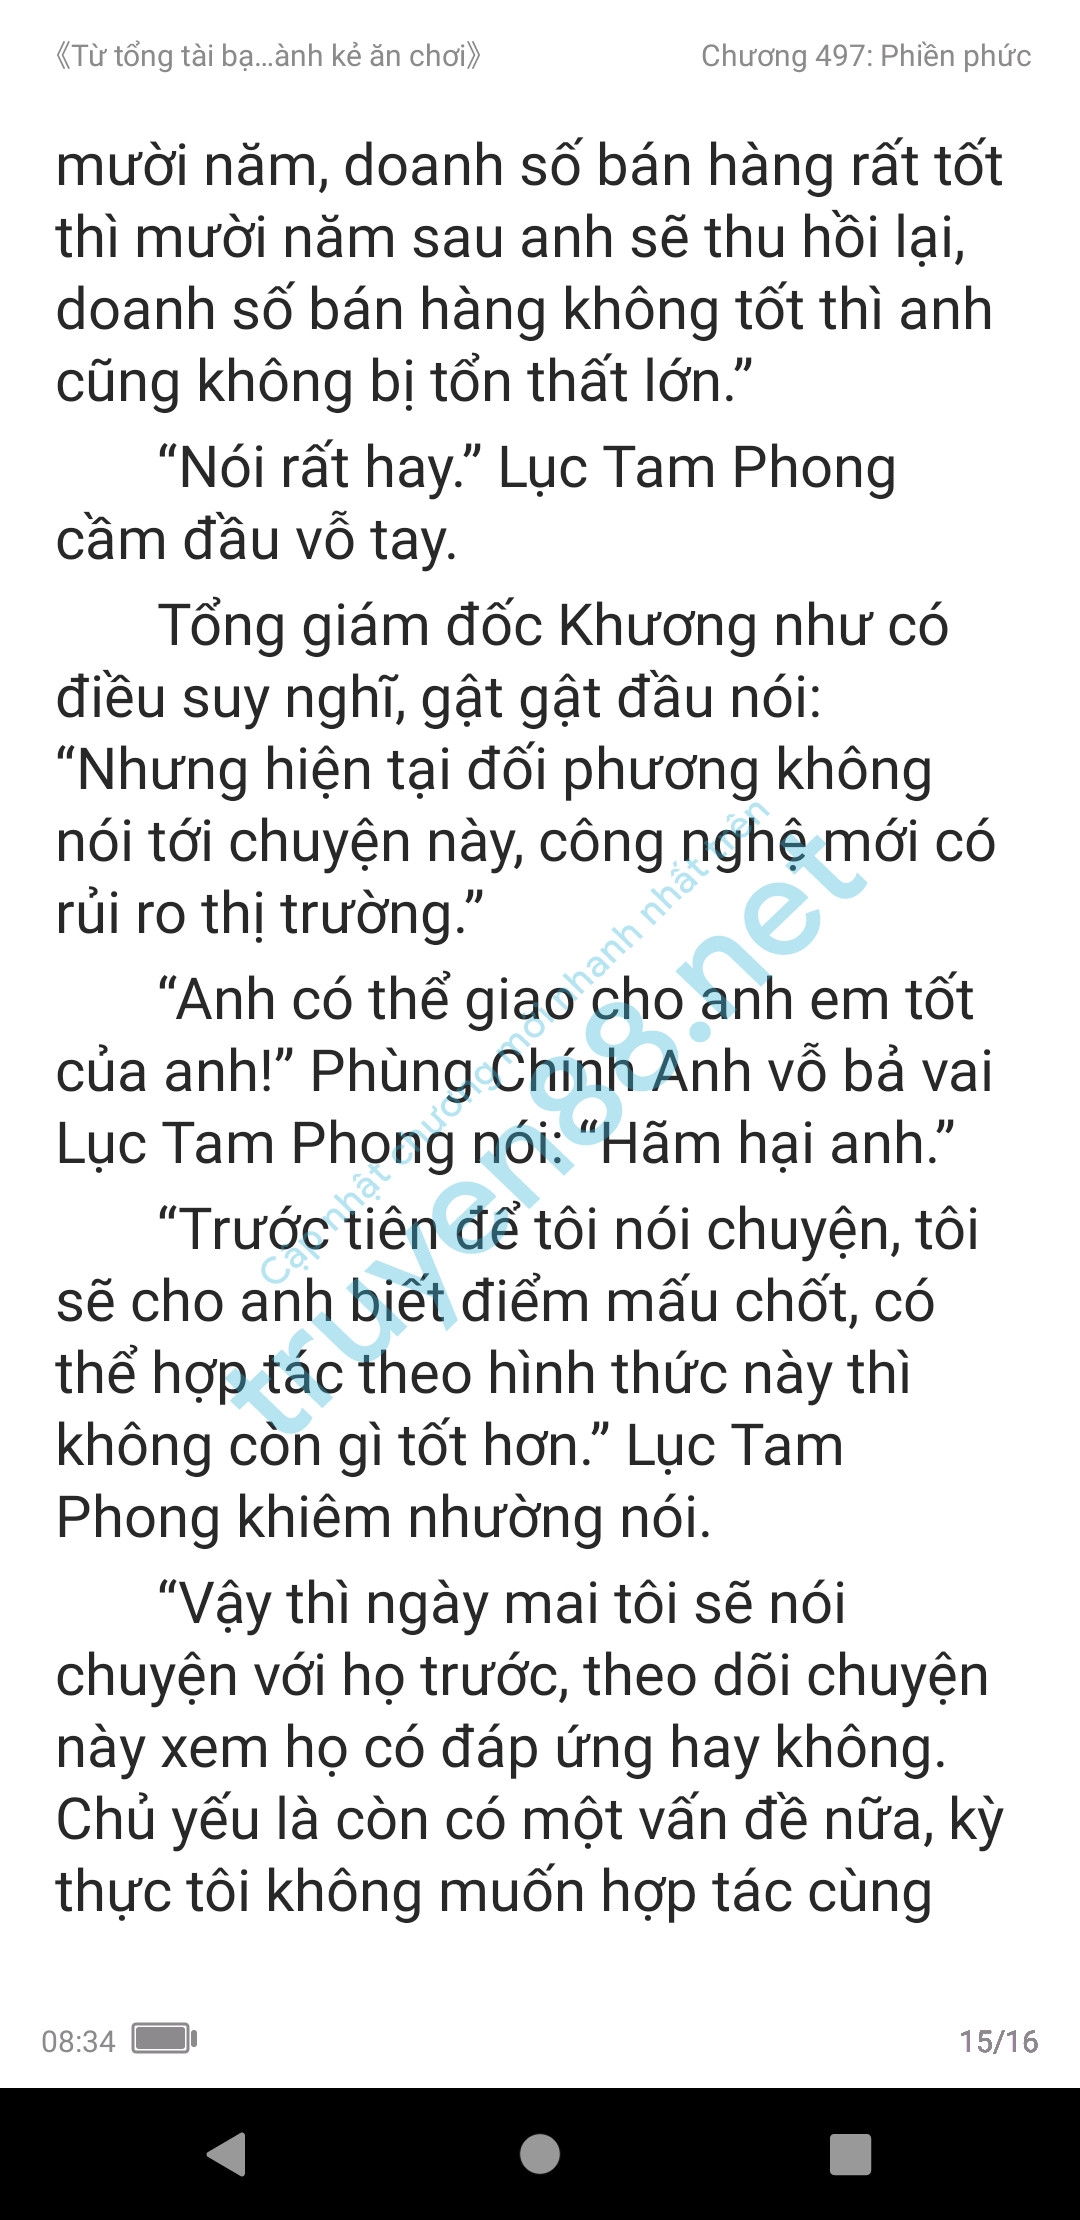 ke-an-choi-bien-tong-tai-497-1